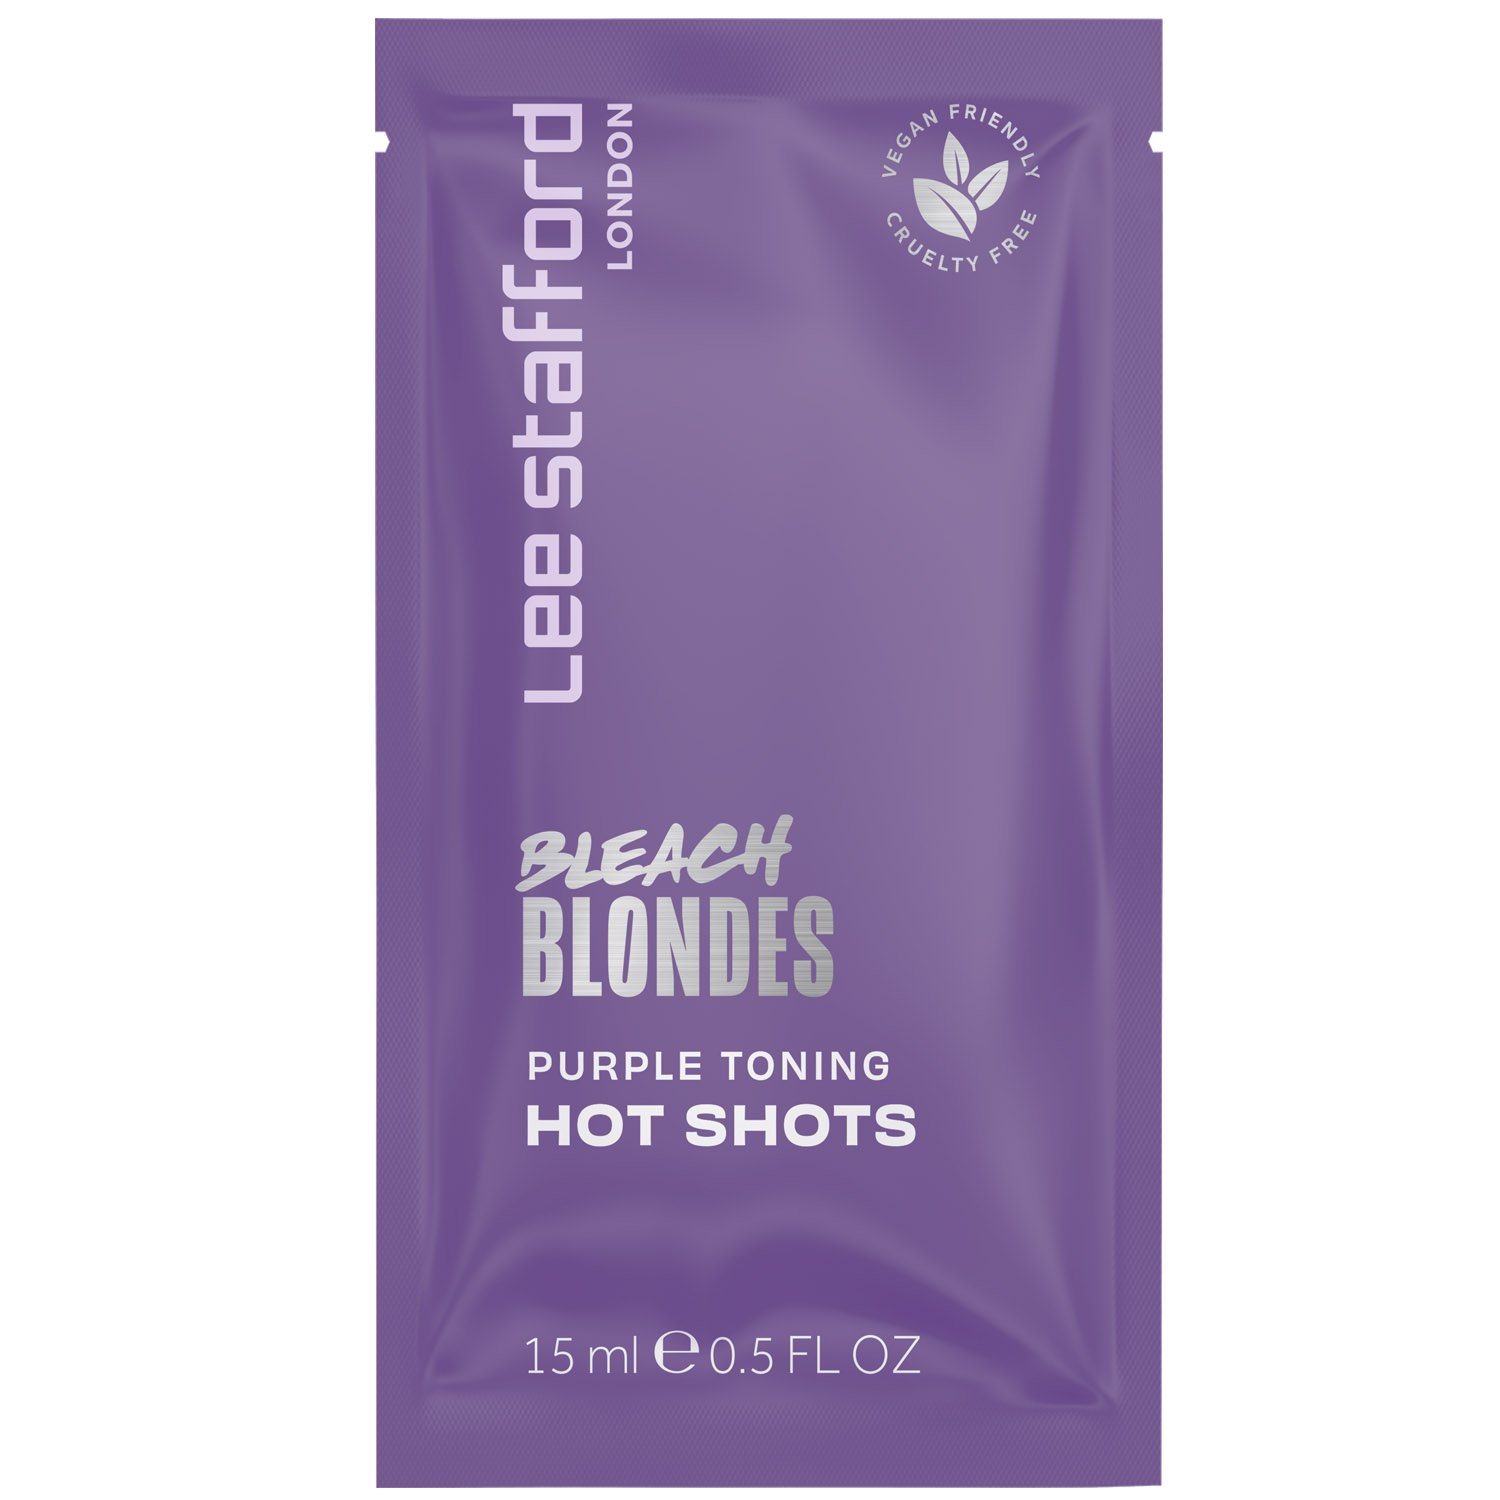 Ампули для освітленого волосся Lee Stafford Bleach Blondes Purple Toning Hot Shots тонувальні 4 шт. х 15 мл - фото 2